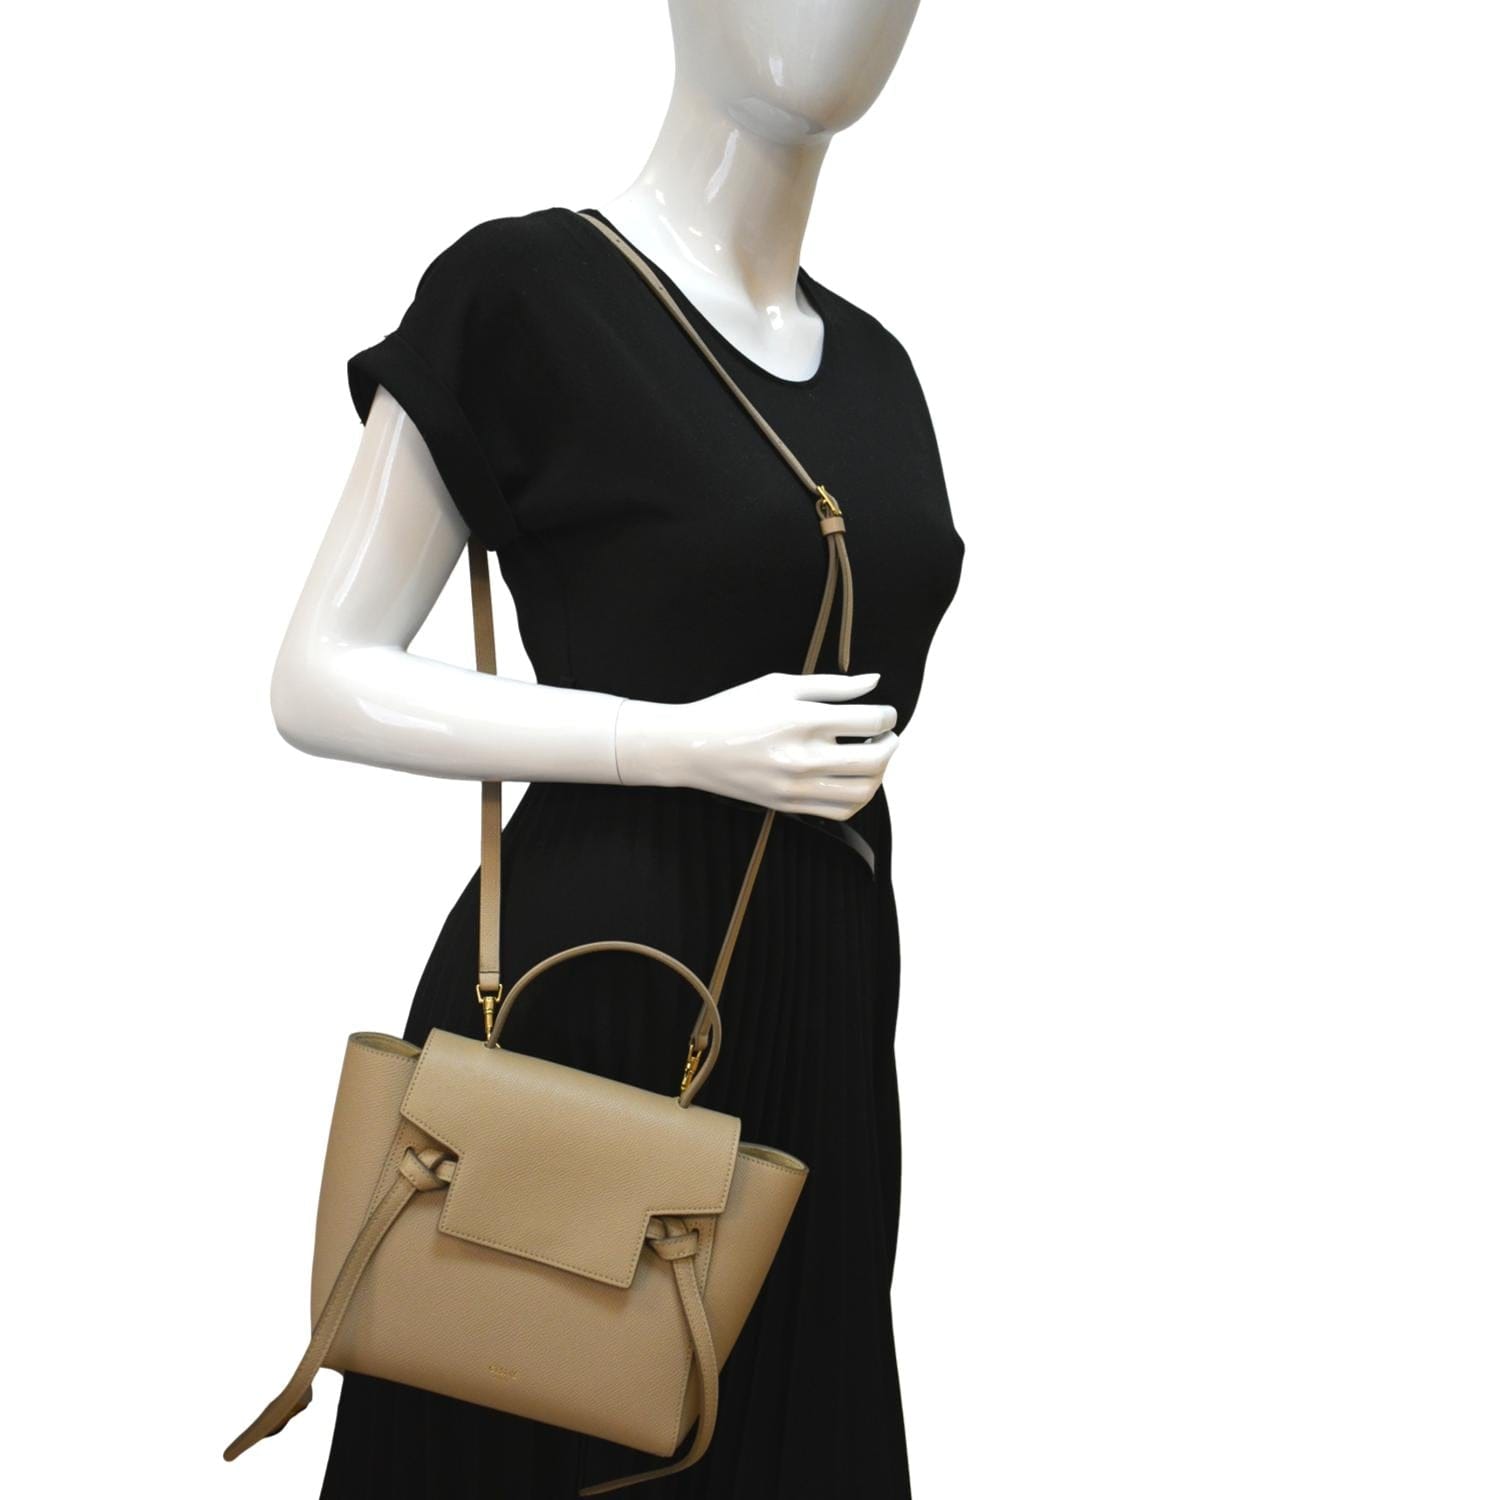 Celine belt bag nano handbag color light taupe shoulder leather